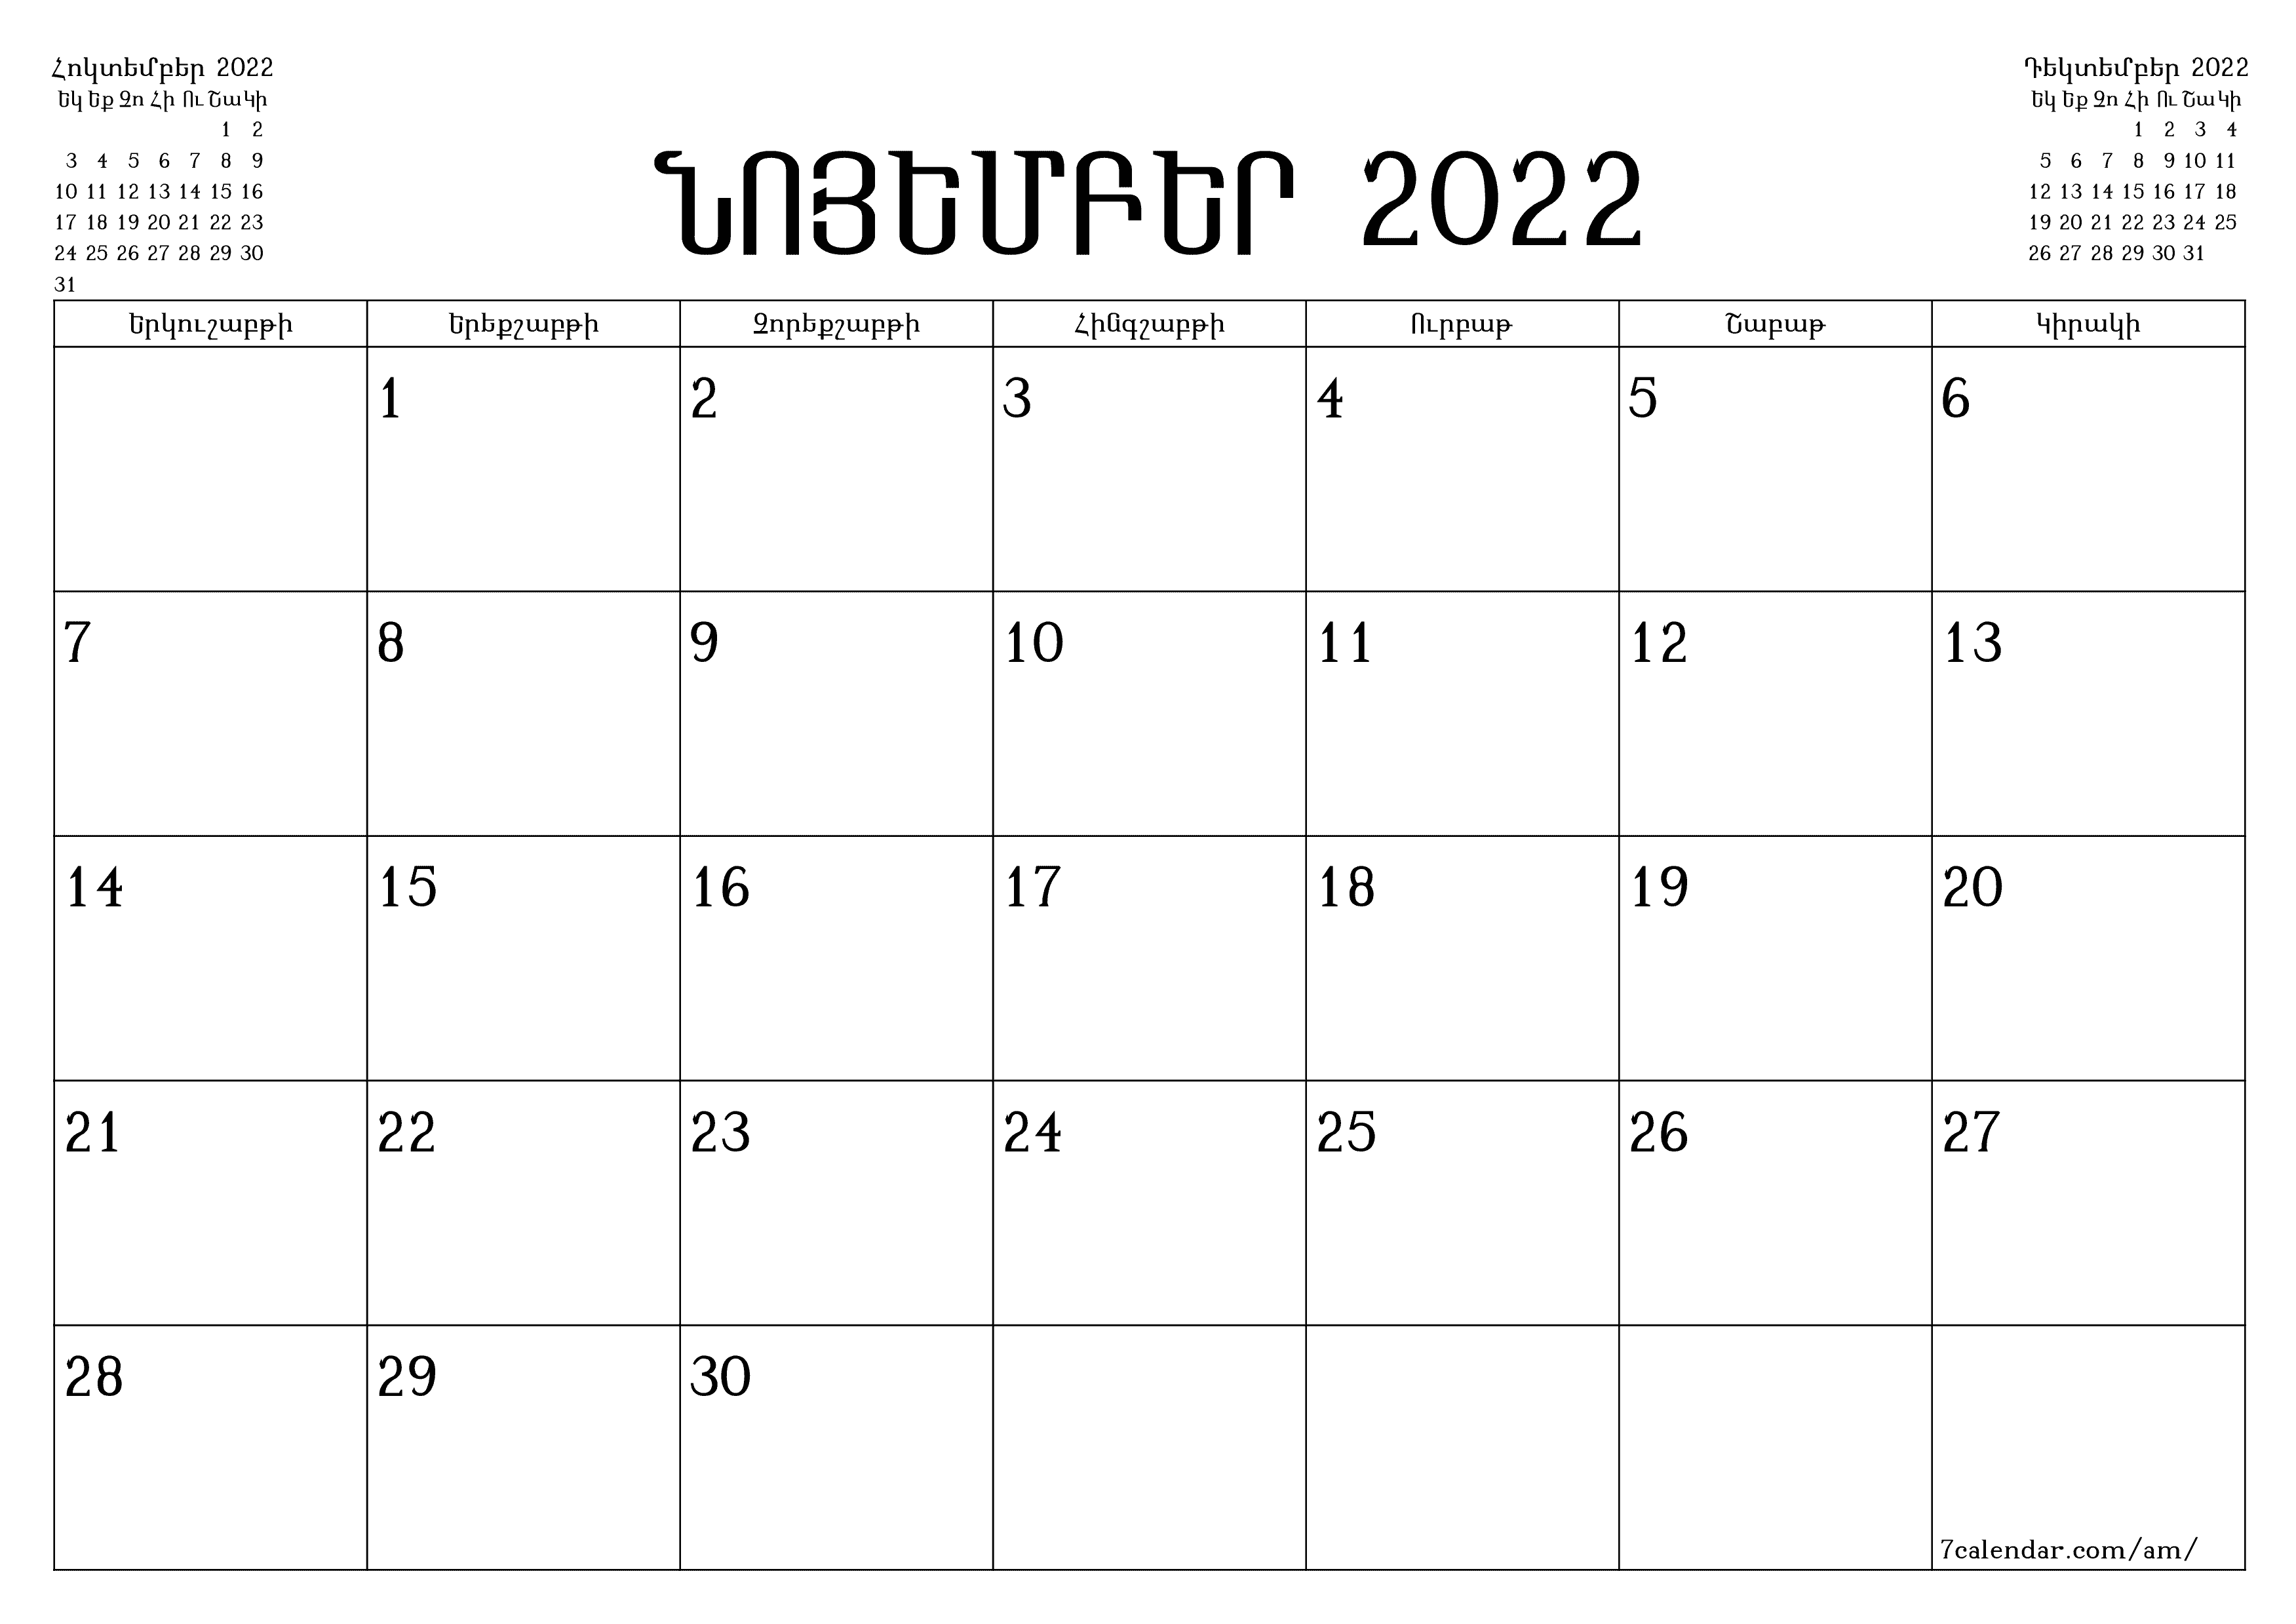 տպագրվող պատի ի ձևանմուշ անվճար հորիզոնական Ամսական պլանավորող օրացույց Նոյեմբեր (Նոյ) 2022